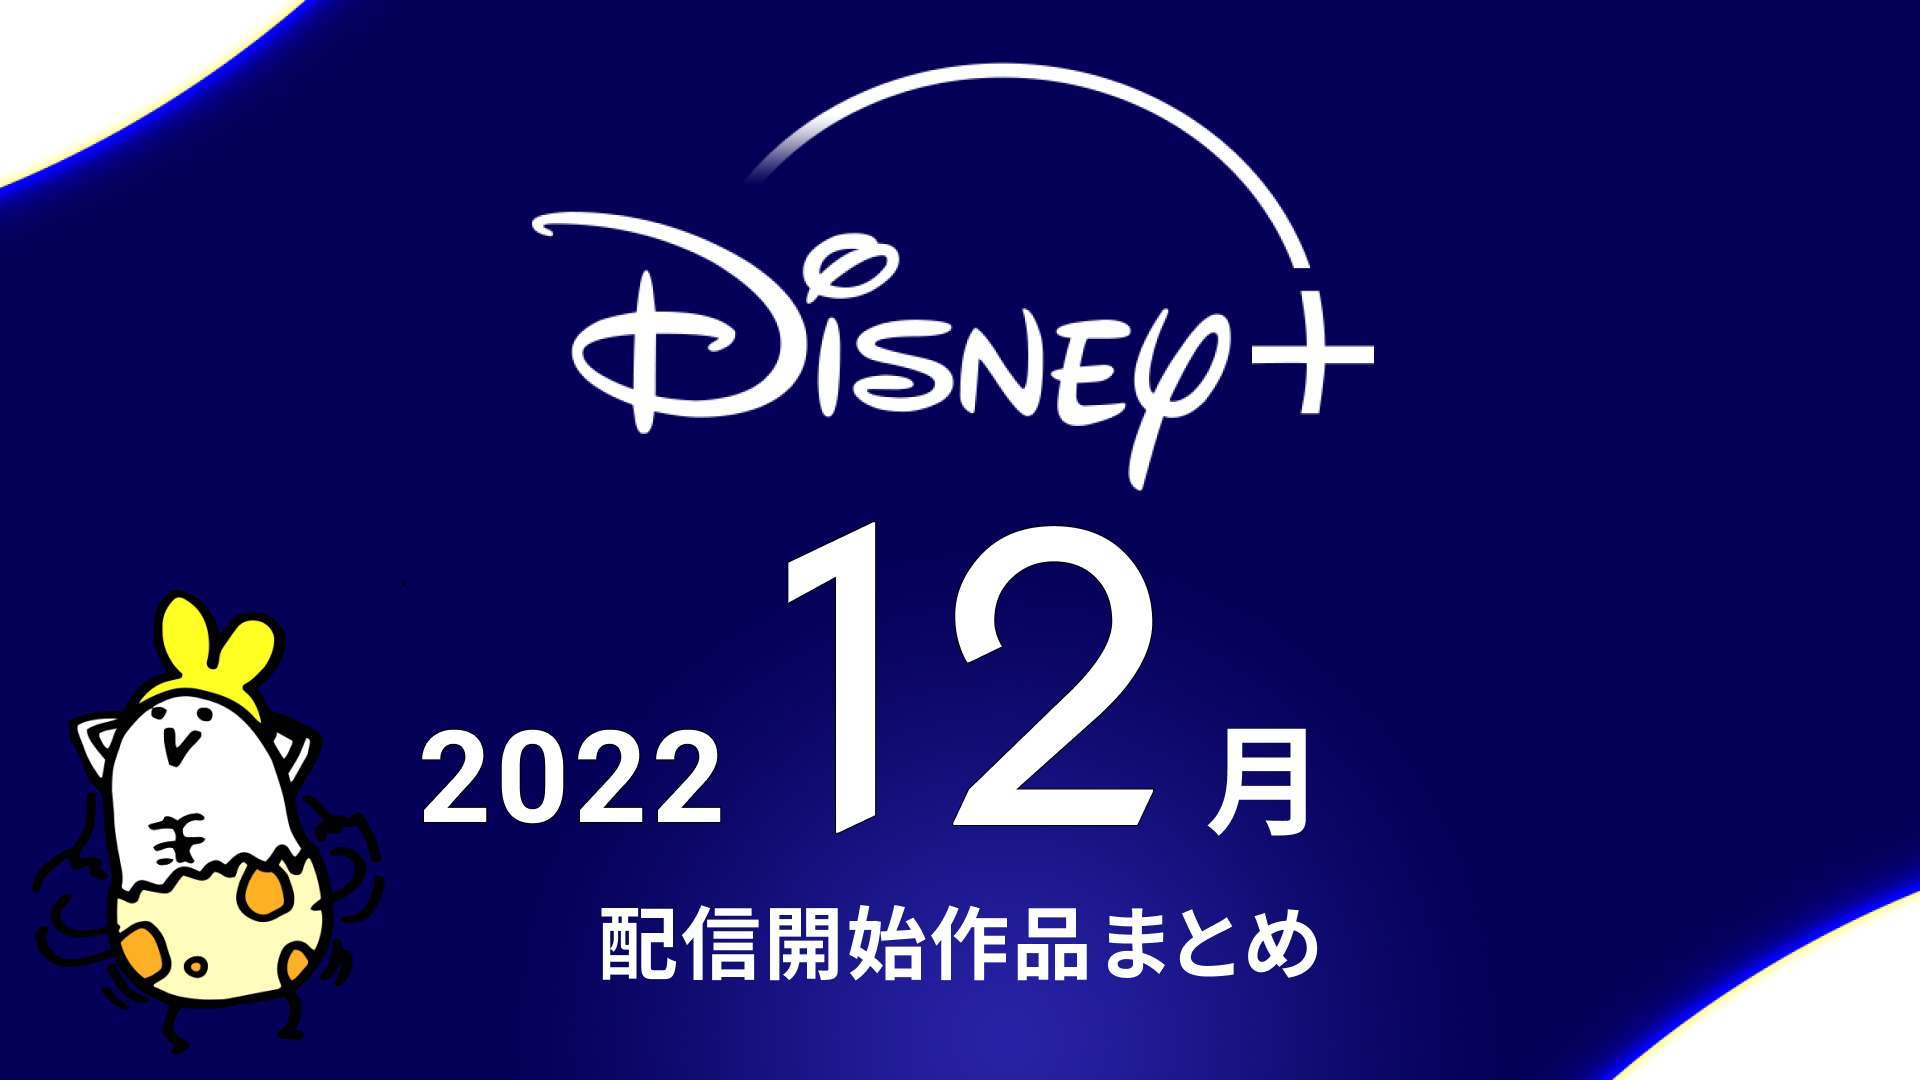 Disney+(ディズニープラス) 2022年12月の配信予定作品まとめ 『ペンタトニックス：ザ・ワールド・クリスマス』『ナショナル・トレジャー 一族の謎』『ガンニバル』